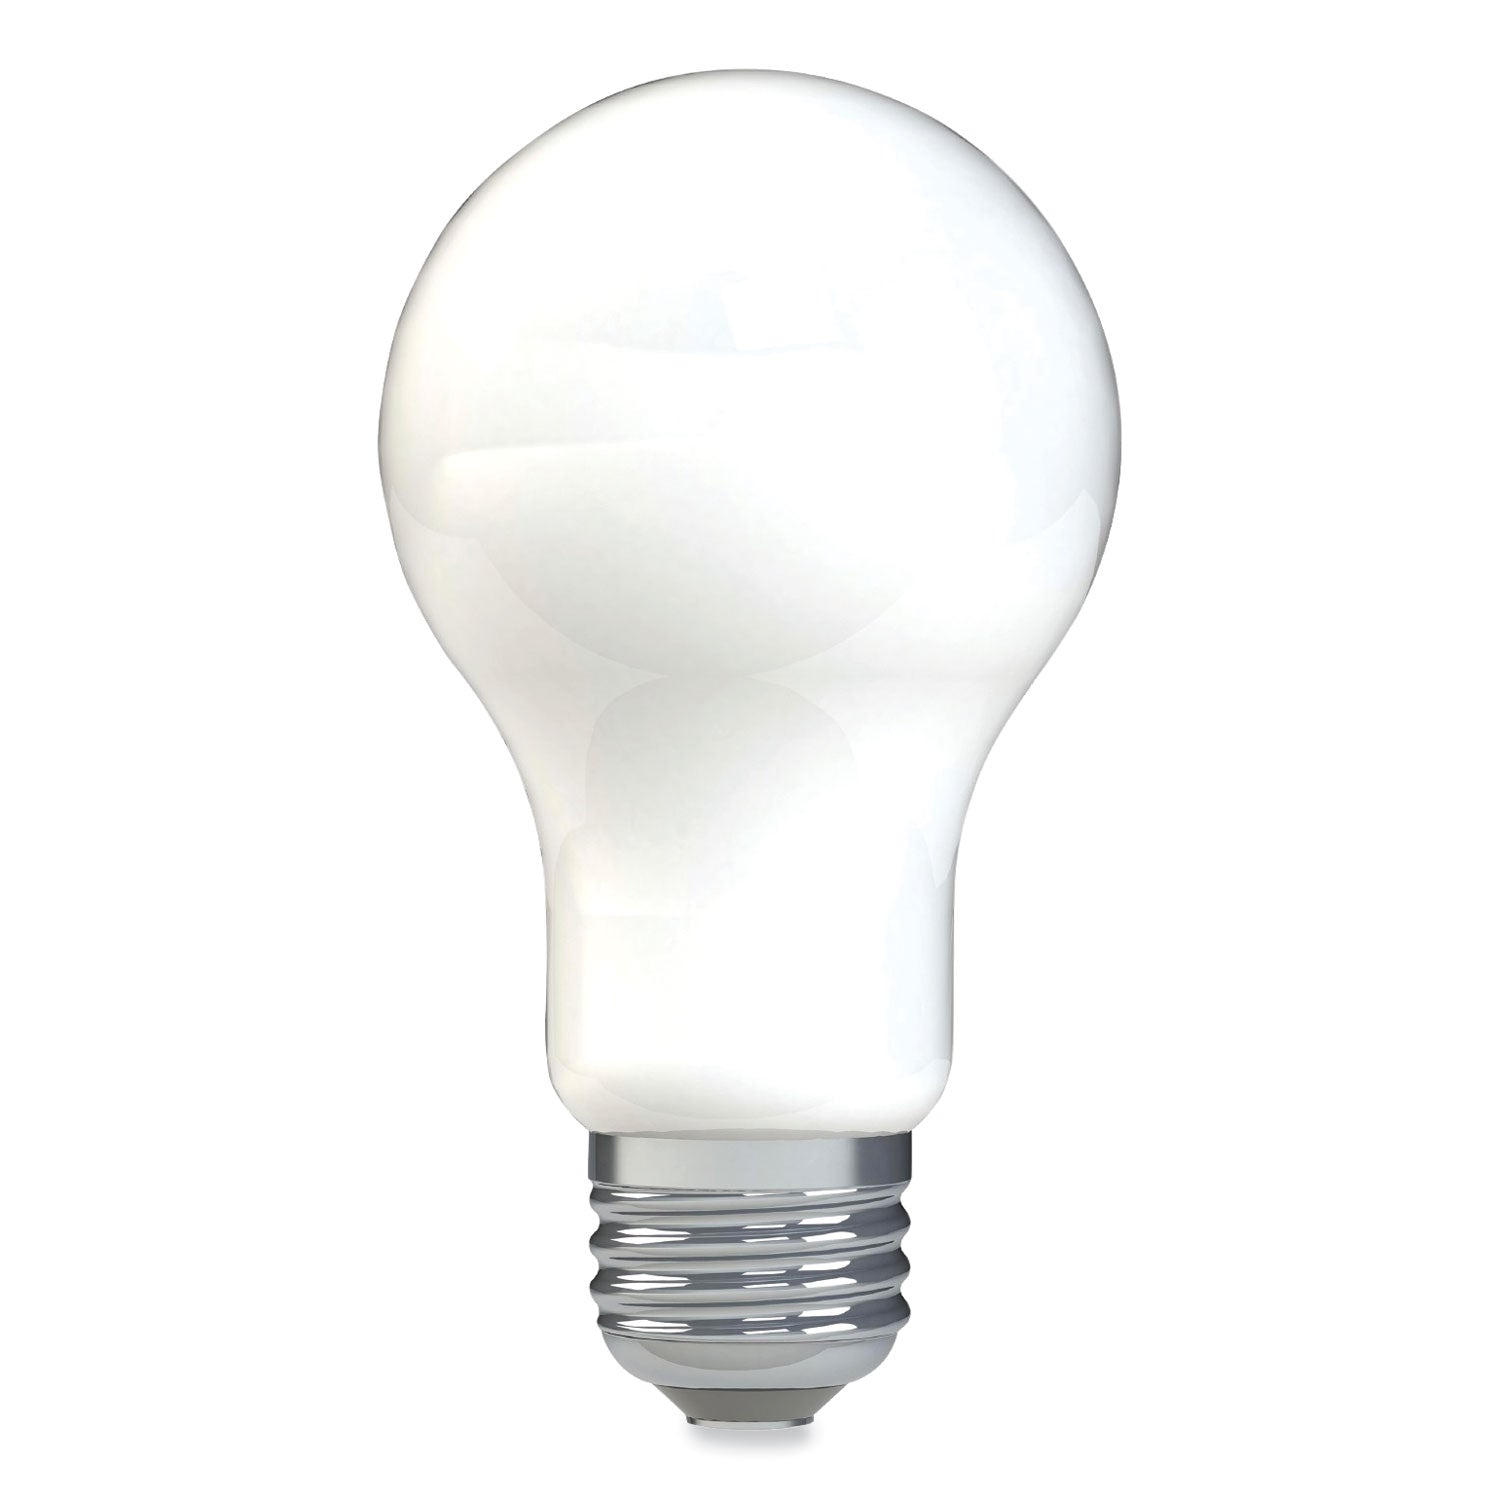 reveal-hd+-led-a19-light-bulb-11-w-4-pack_gel93127996 - 2